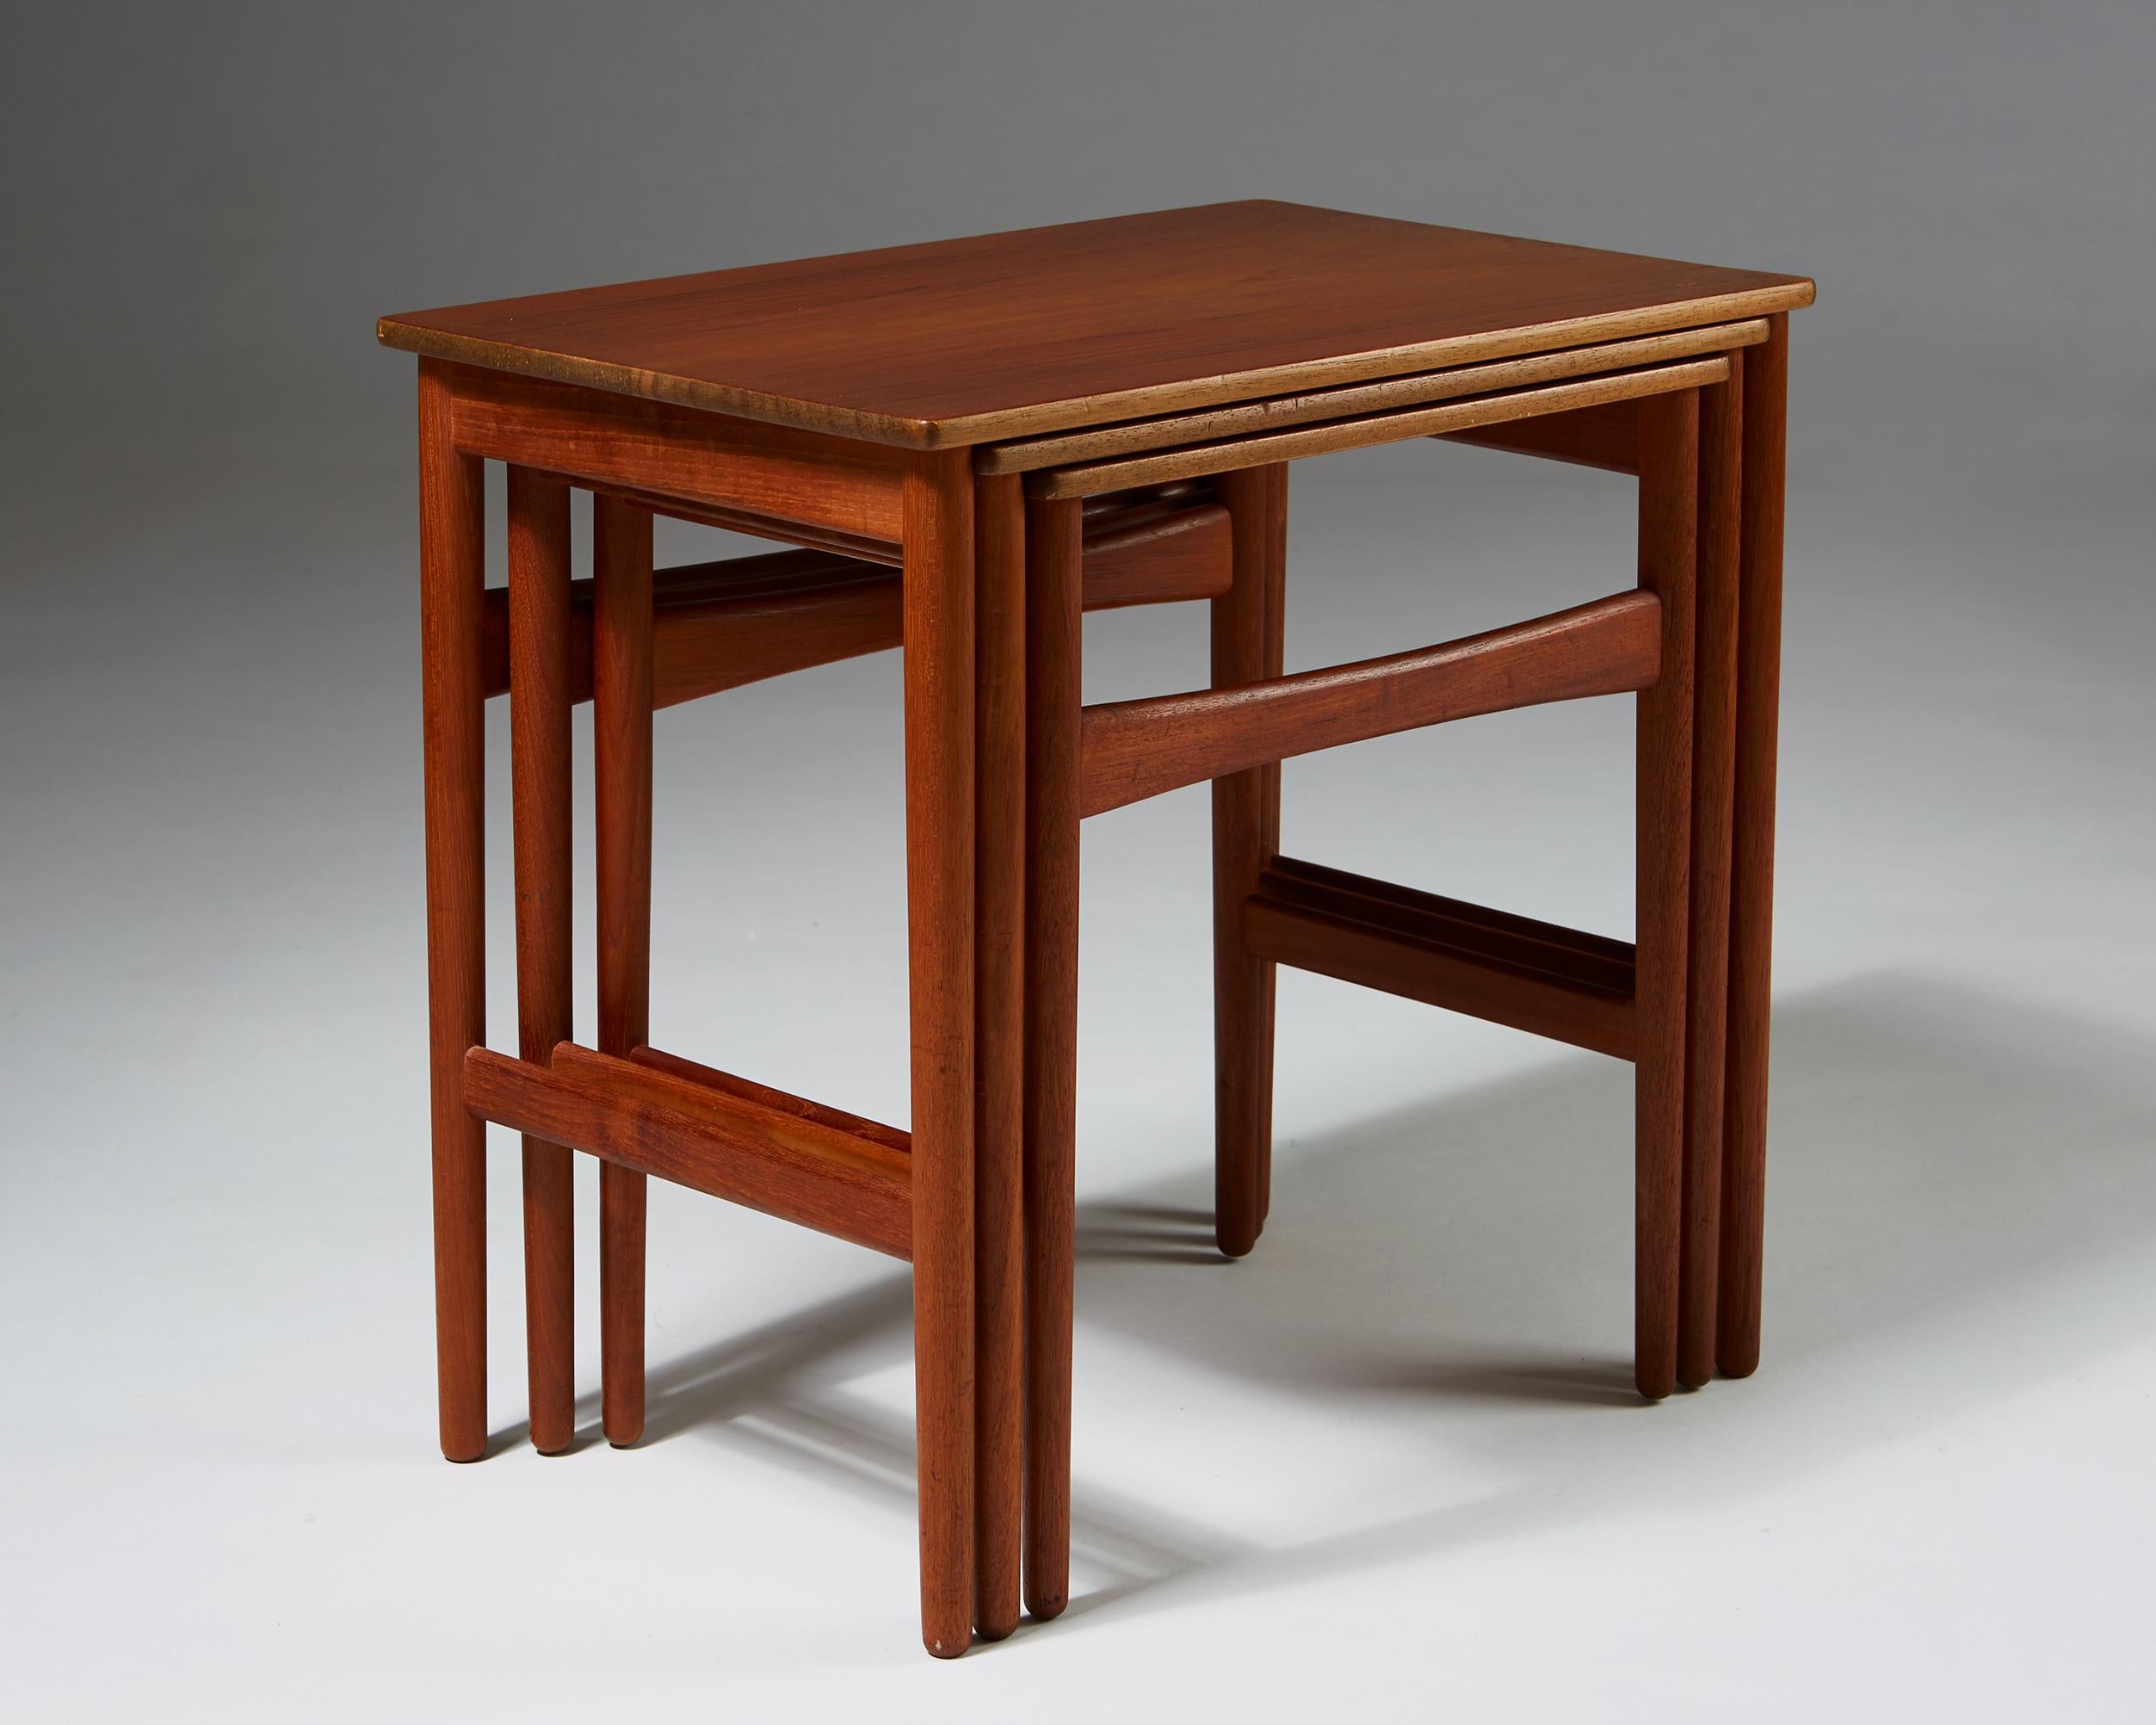 Scandinavian Modern Nest of Tables Designed by Hans J. Wegner for Andreas Tuck, Denmark, 1950s